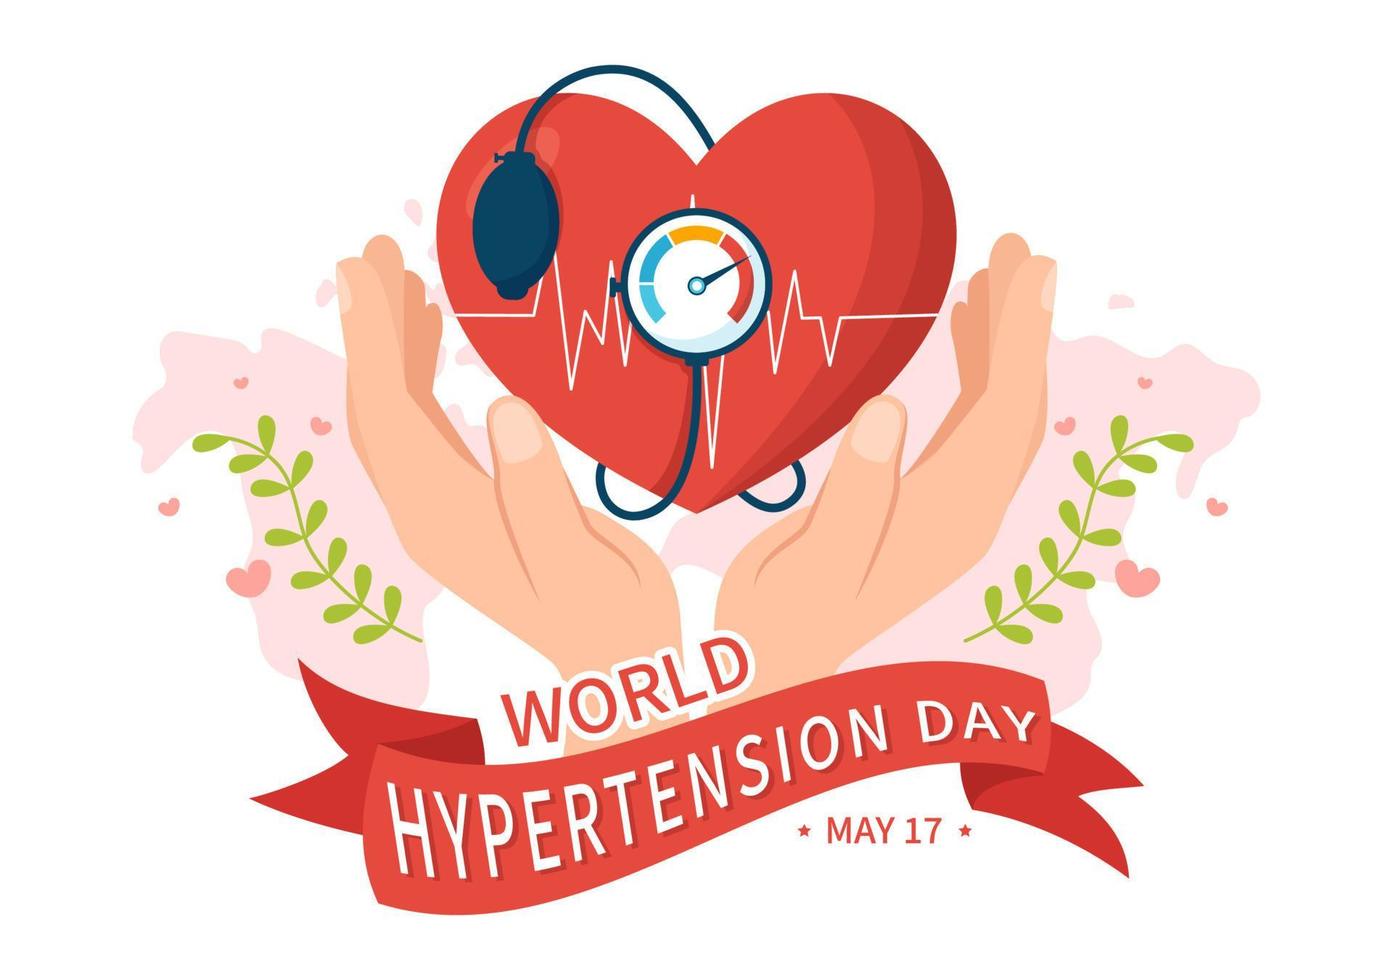 mundo hipertensión día en mayo 17 ilustración con alto sangre presión y rojo amor imagen en plano dibujos animados mano dibujado para aterrizaje página plantillas vector